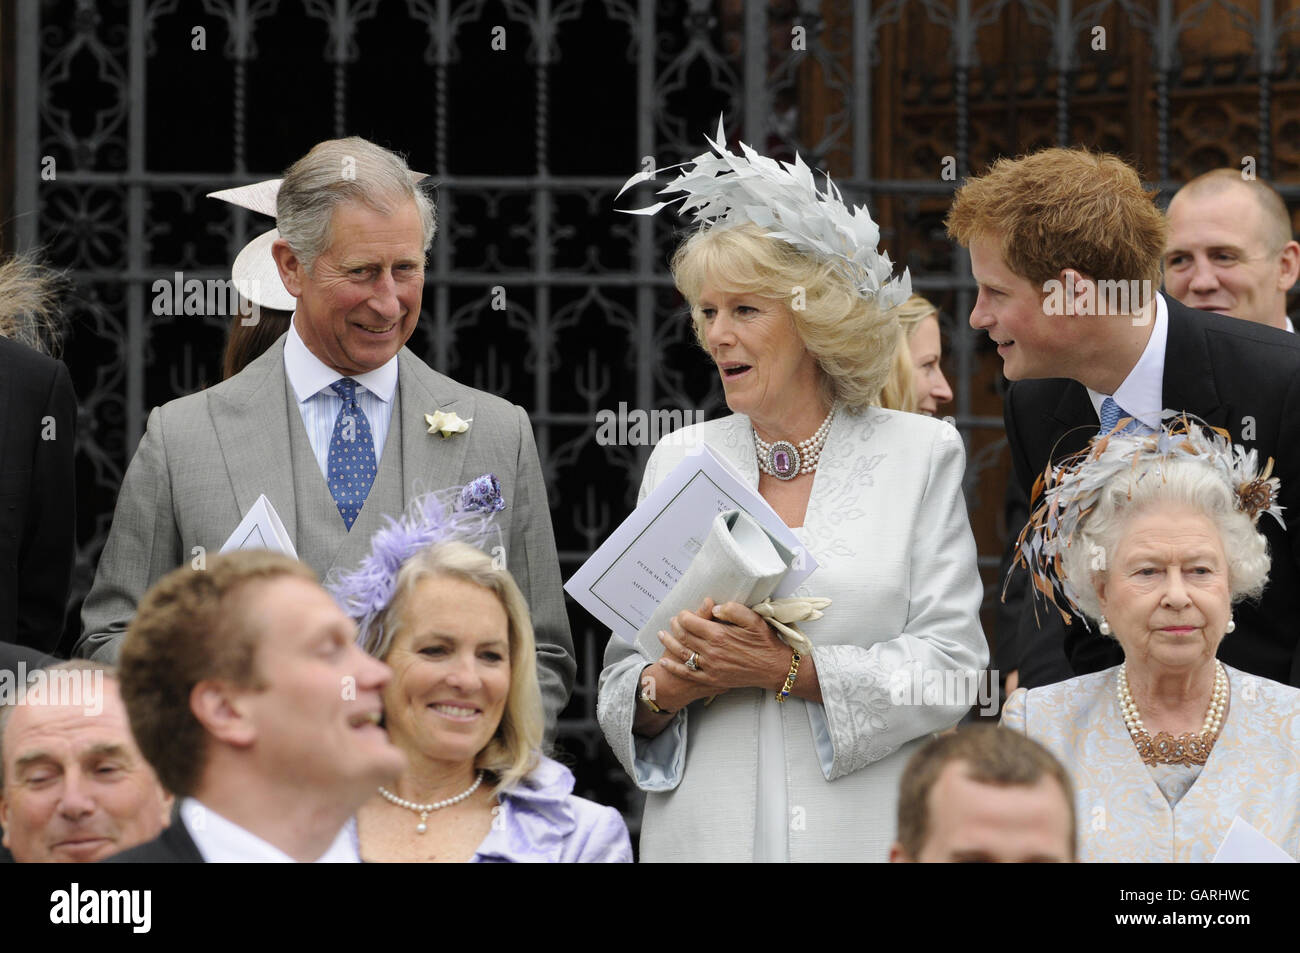 La reine Elizabeth II et le prince de Galles, la duchesse de Cornwall et le prince Harry devant la chapelle Saint-Georges à Windsor, en Angleterre, après la cérémonie de mariage de Peter Phillips et Autumn Kelly. Banque D'Images